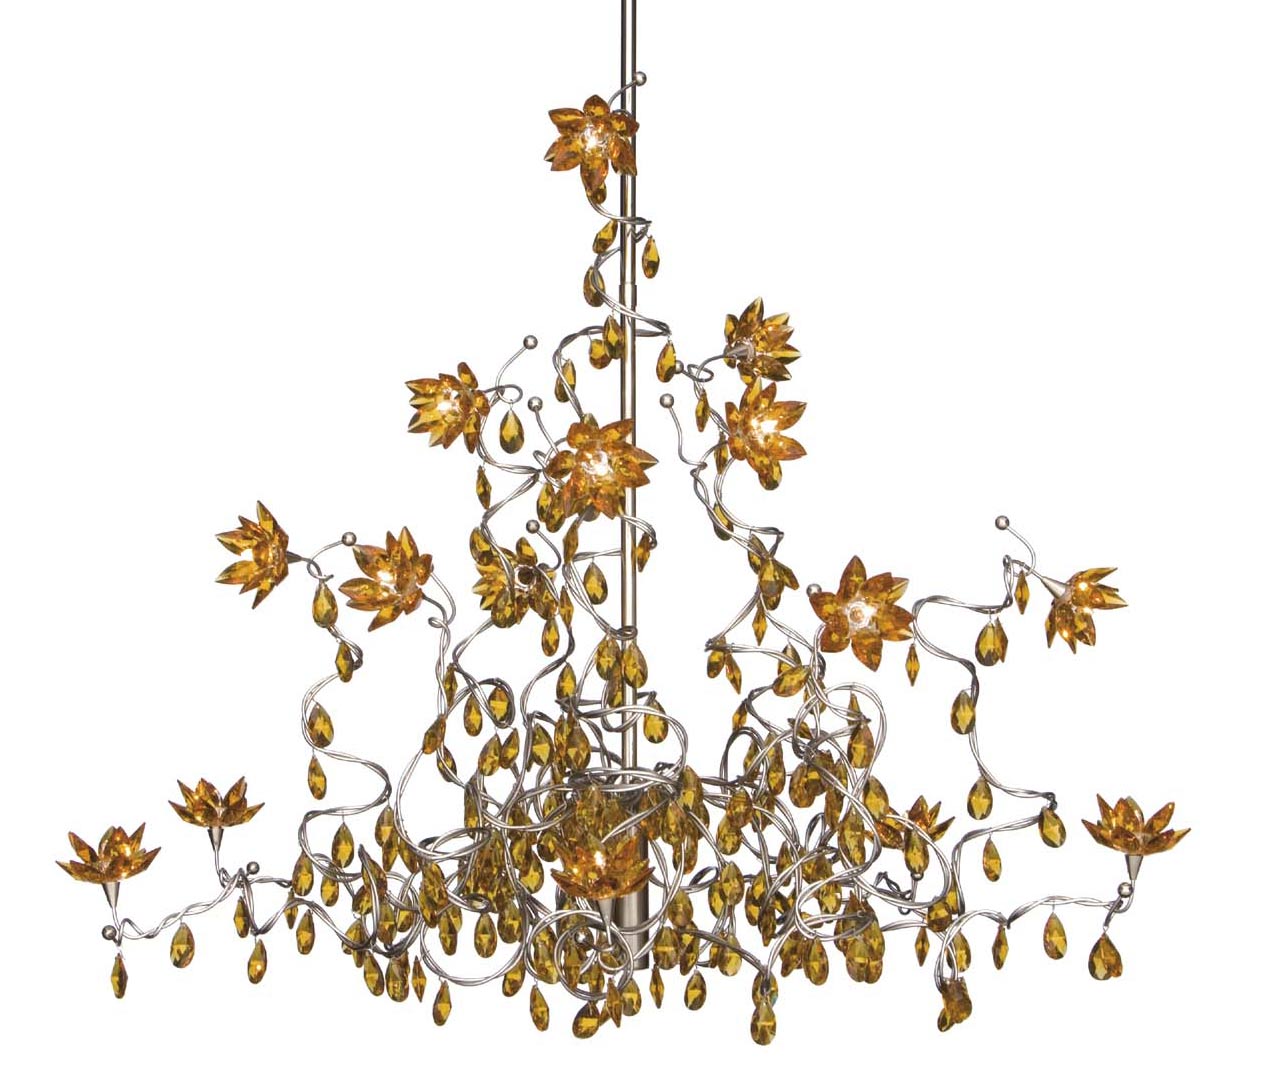 Jewel amber 15-light chandelier in glass and metal. Harco Loor. 